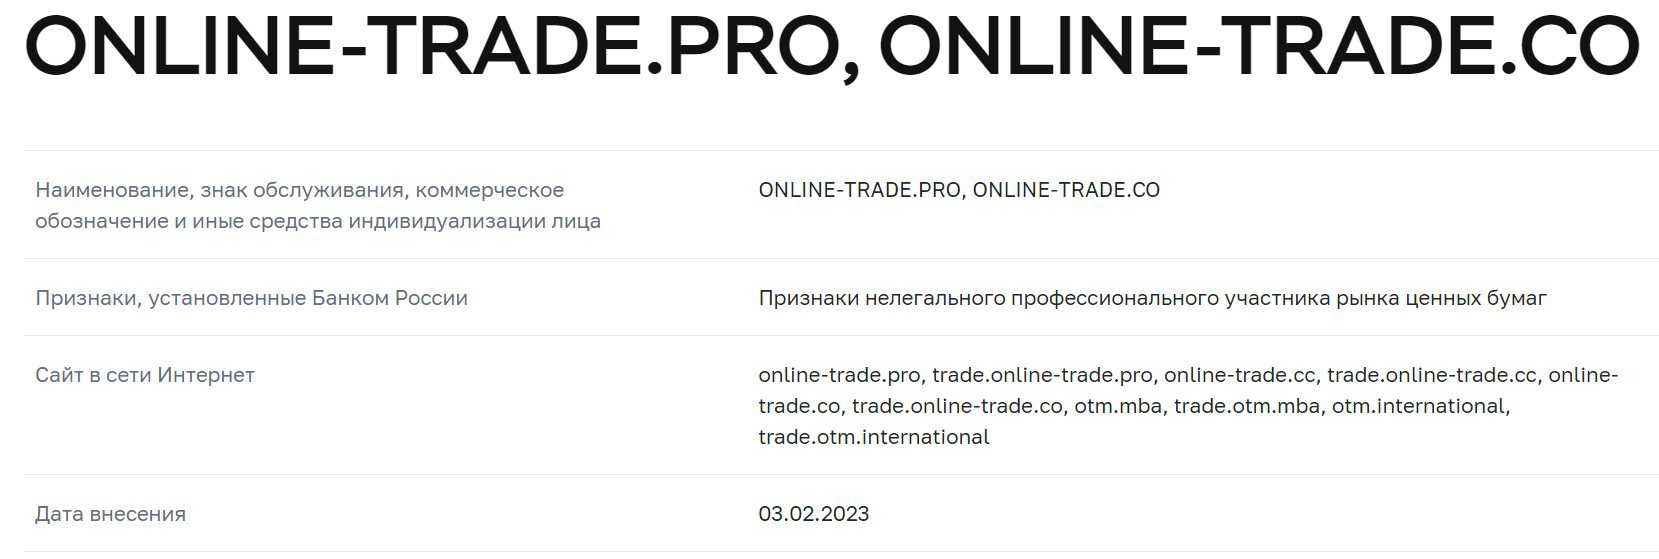 Online Pro Trading юридическсие данные компании